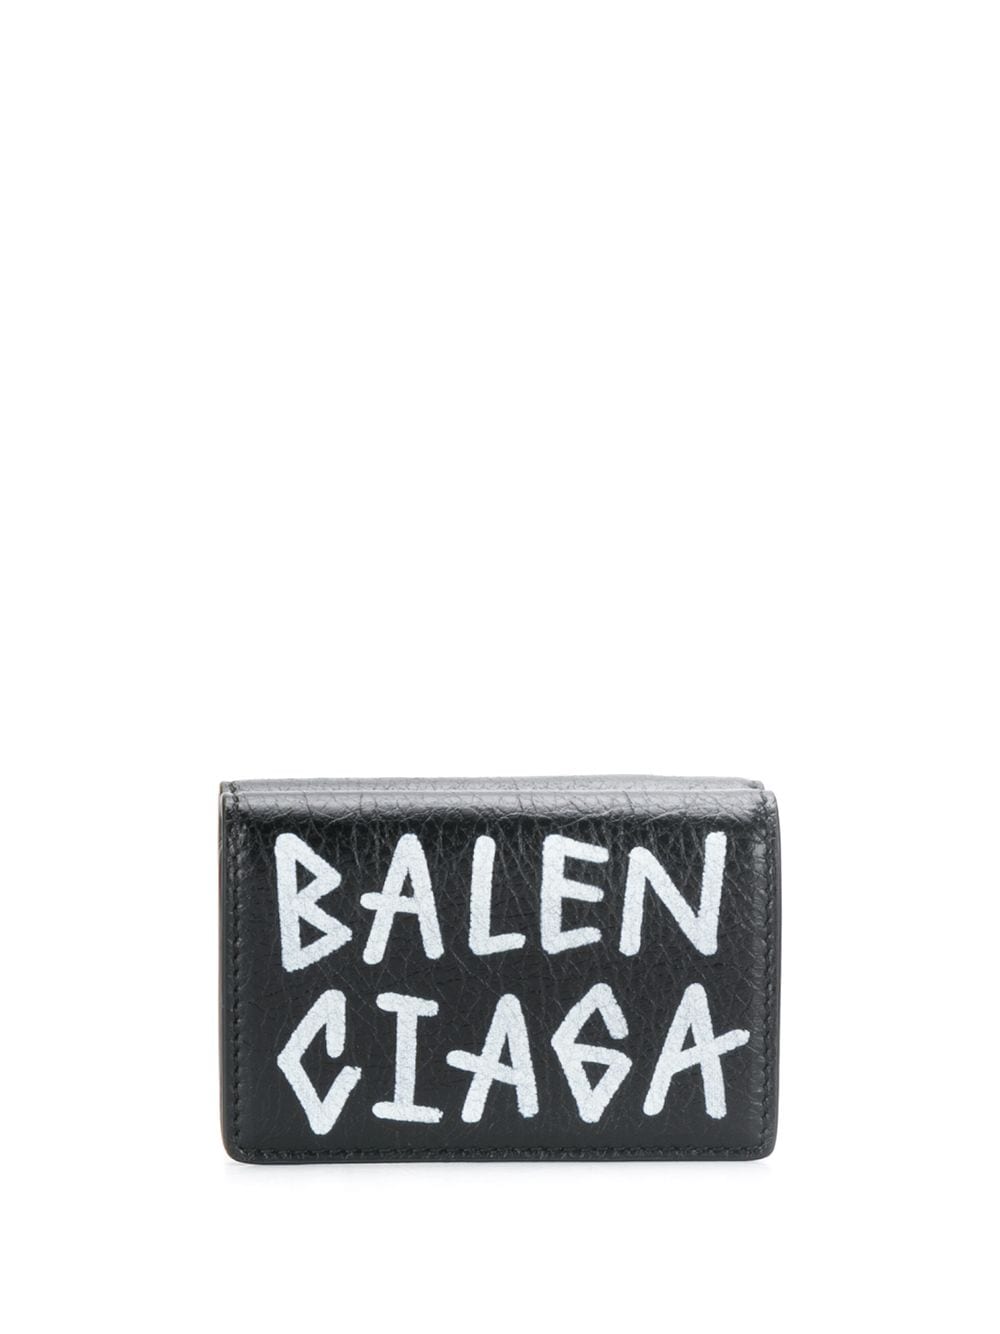 фото Balenciaga мини-кошелек carry с принтом граффити